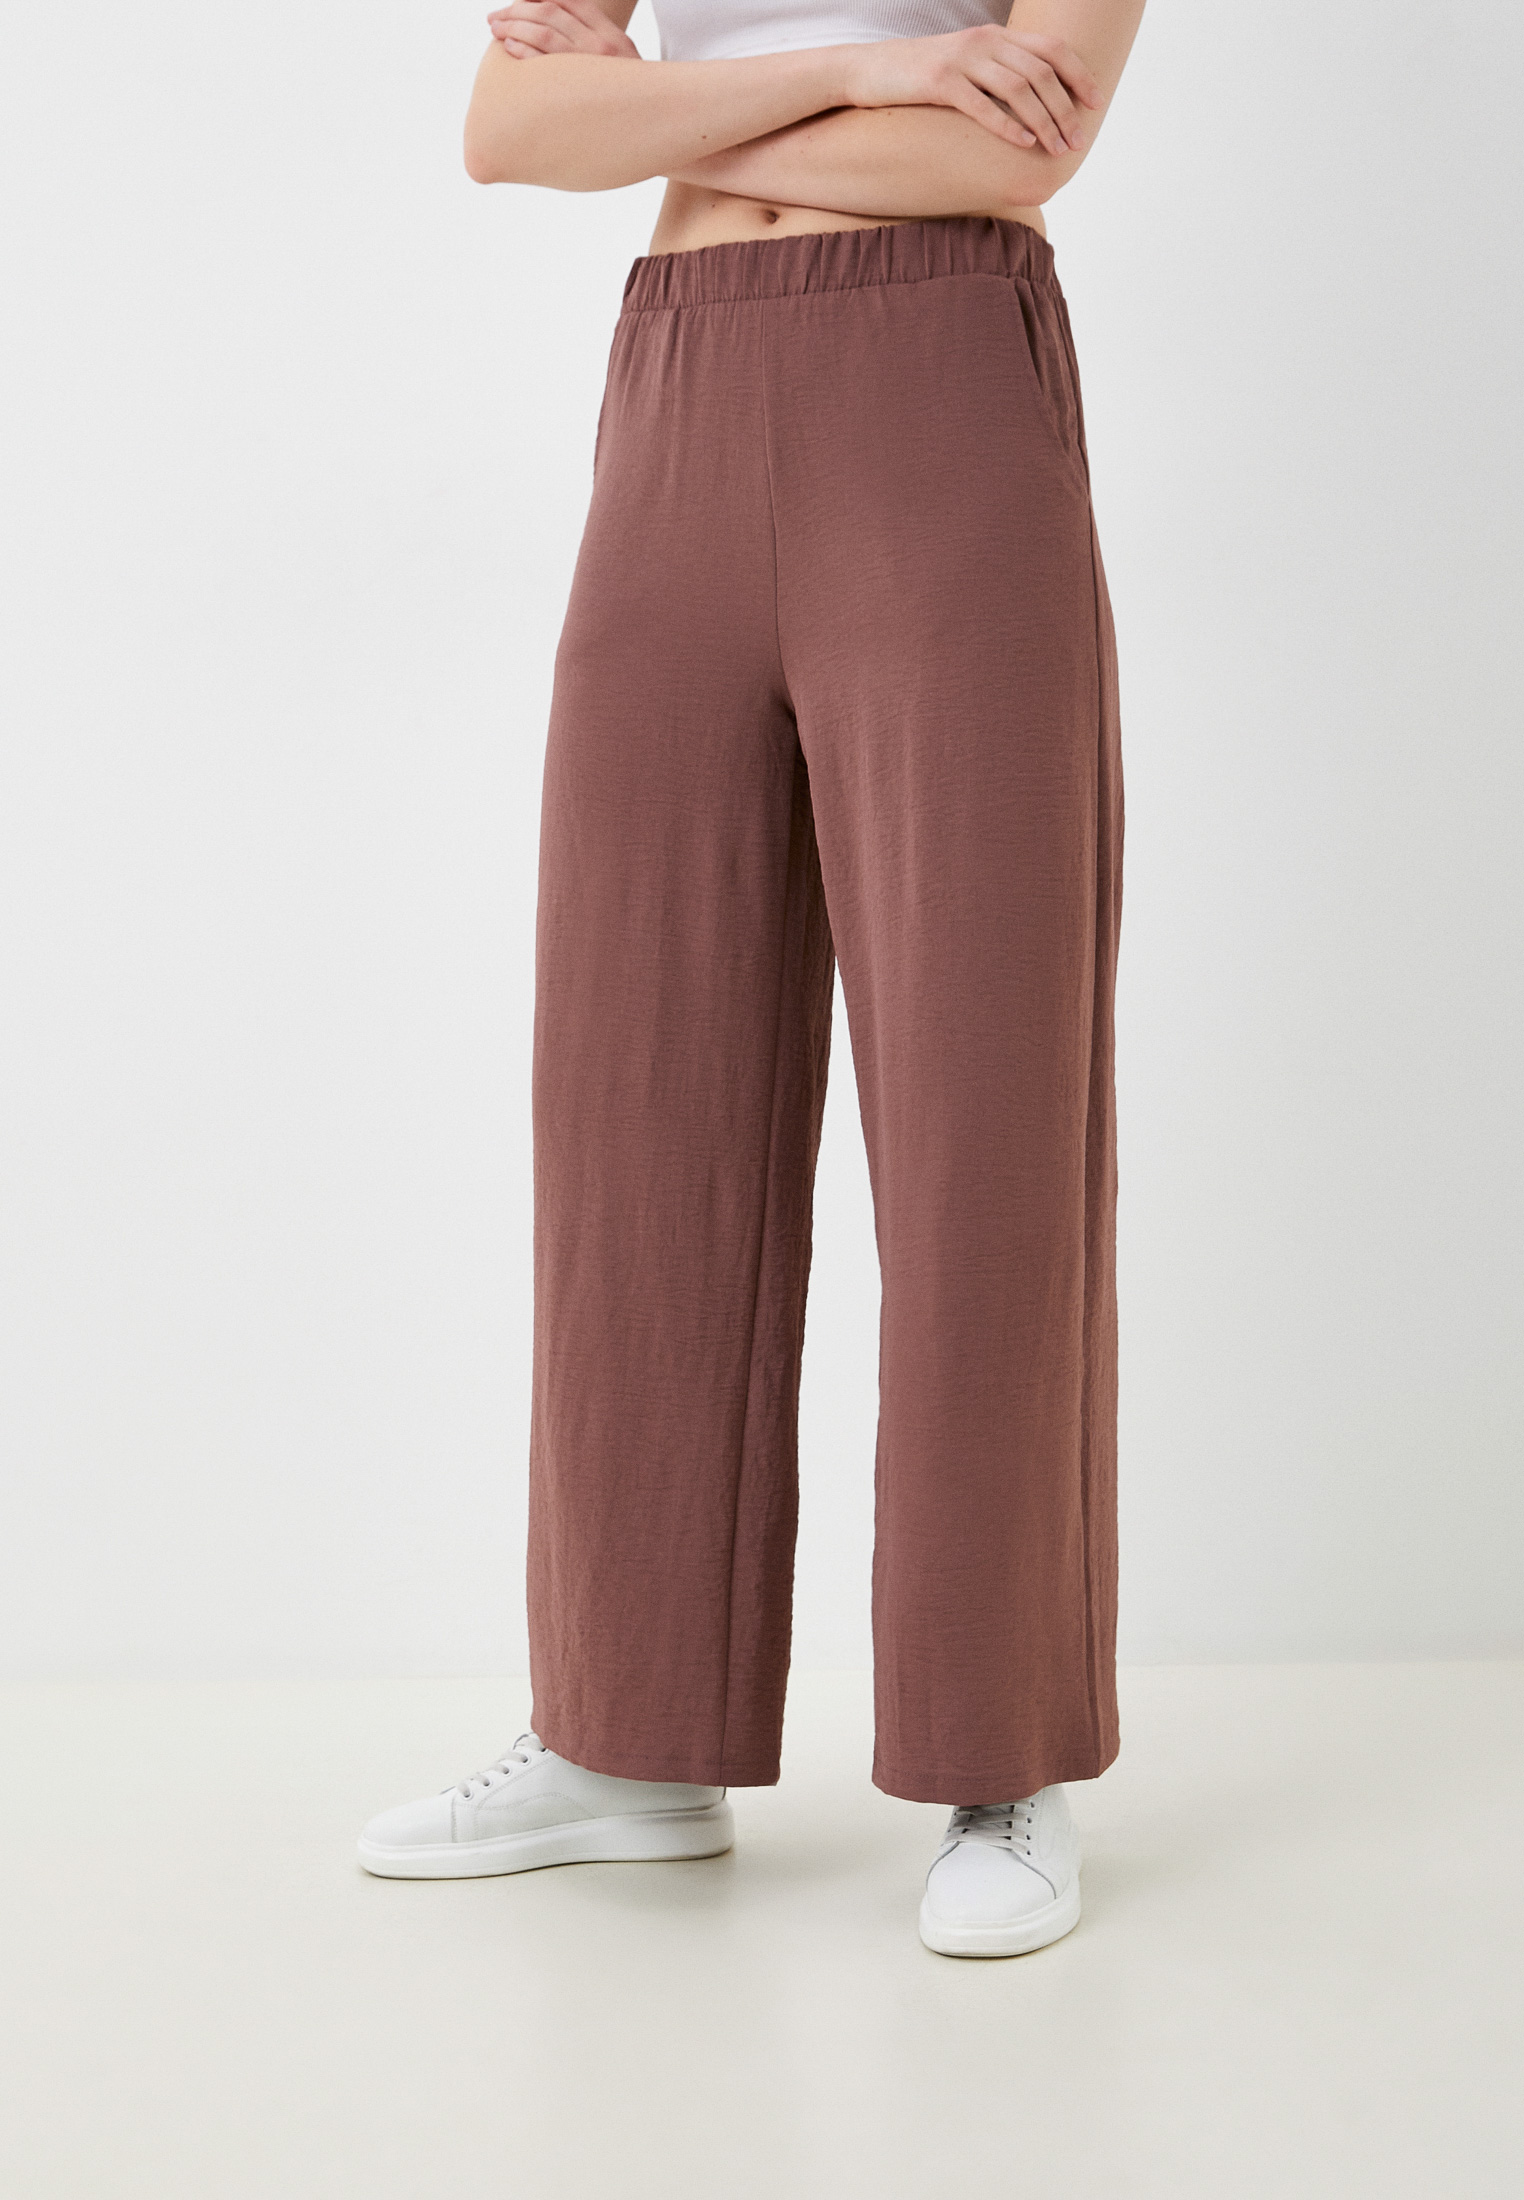 Женские широкие и расклешенные брюки Toku Tino TT8599433/